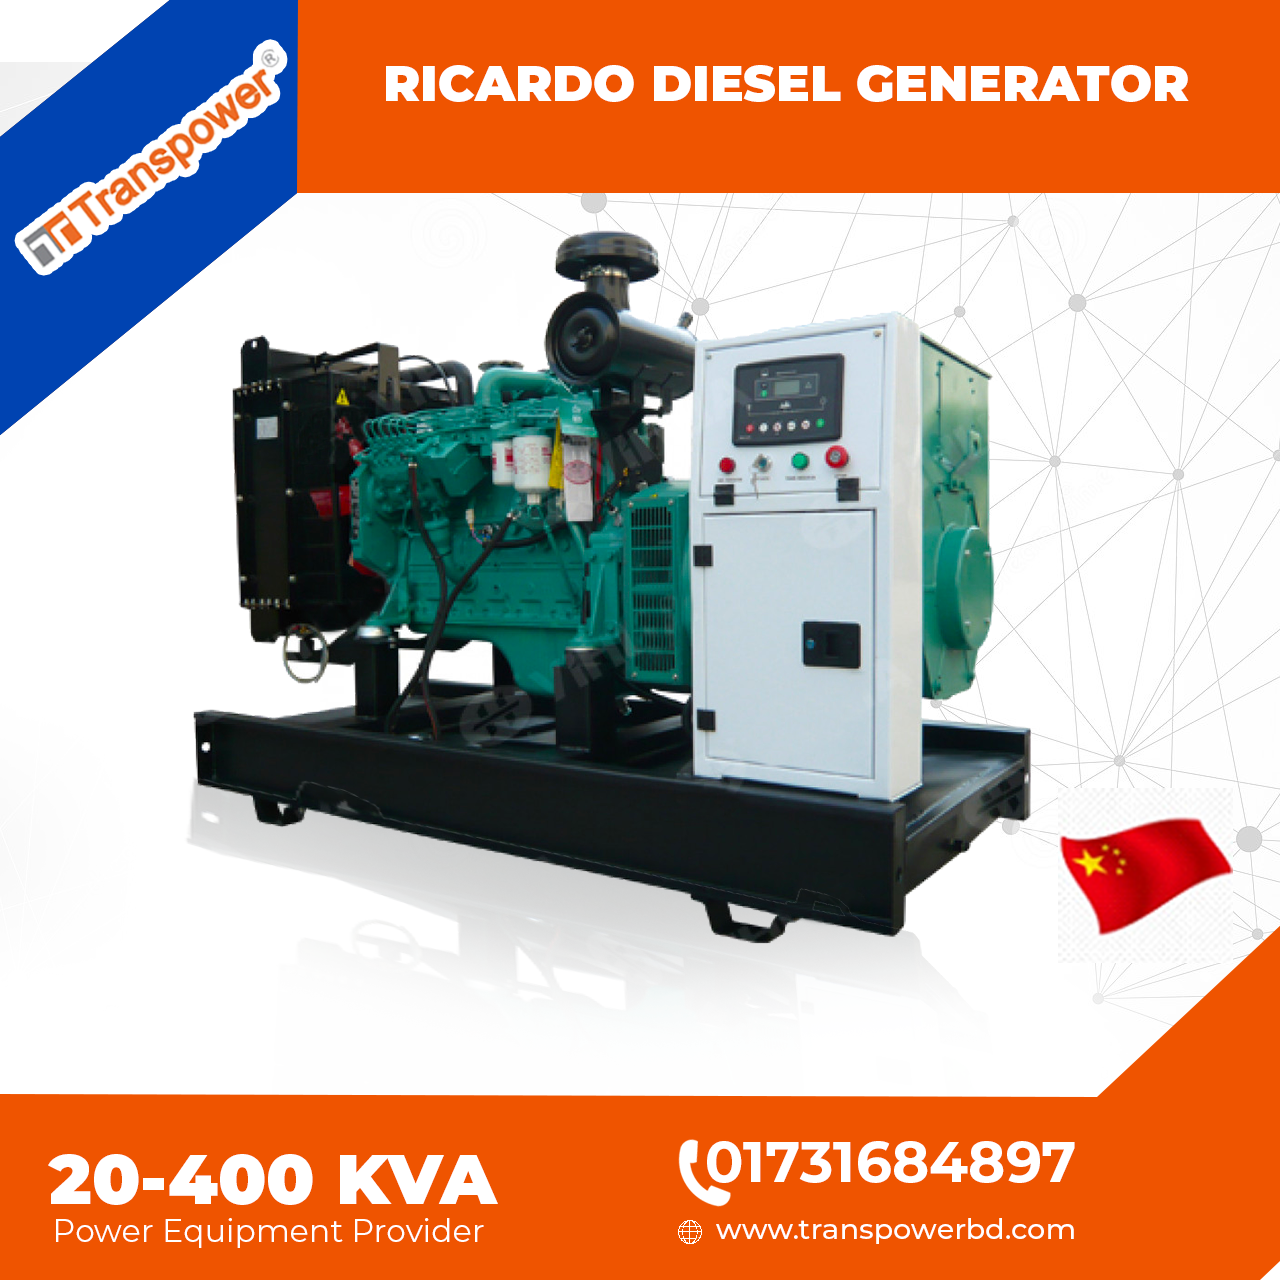 50 KVA Ricardo Diesel Generator (China)